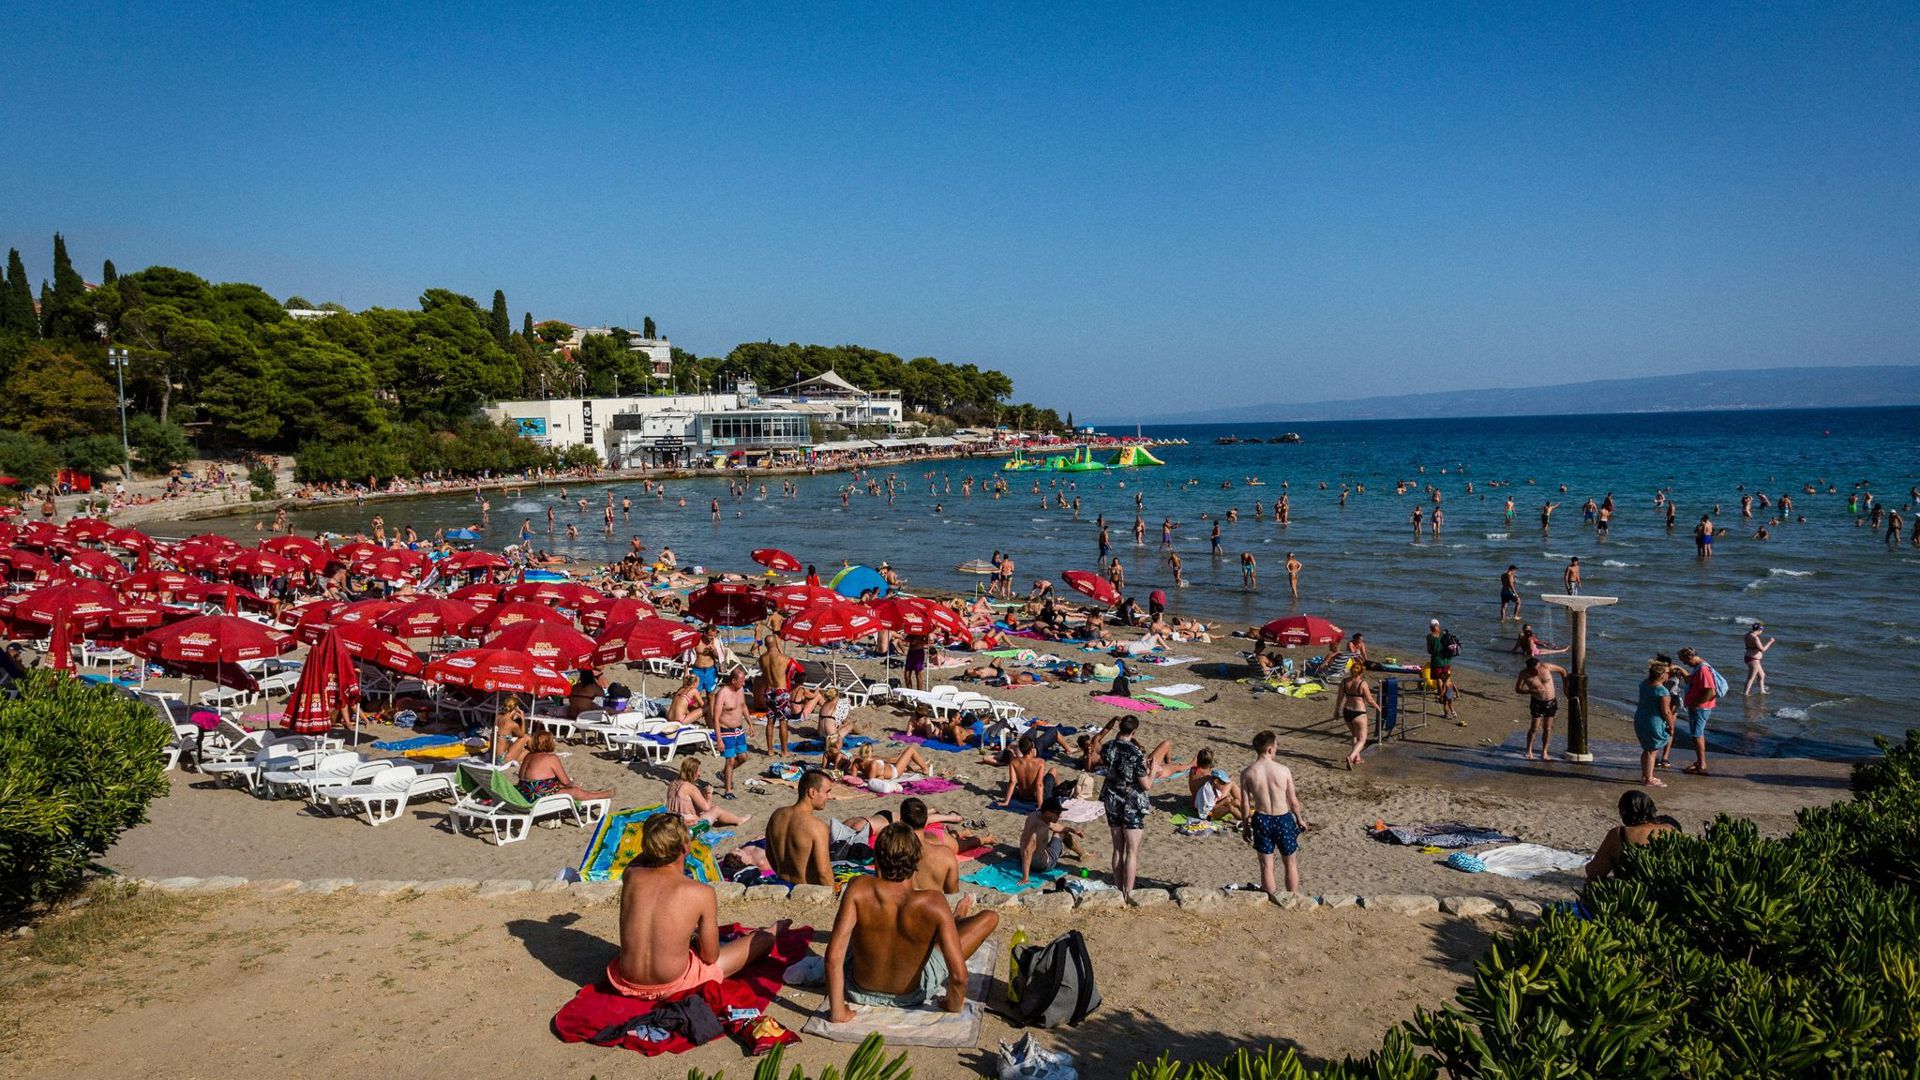 Badegäste sonnen sich am Strand Bacvice. Wegen der gestiegenen Zahl von Corona-Neuinfektionen hat das Auswärtige Amt eine Reisewarnung für Teile des Urlaubslands Kroatien ausgesprochen.